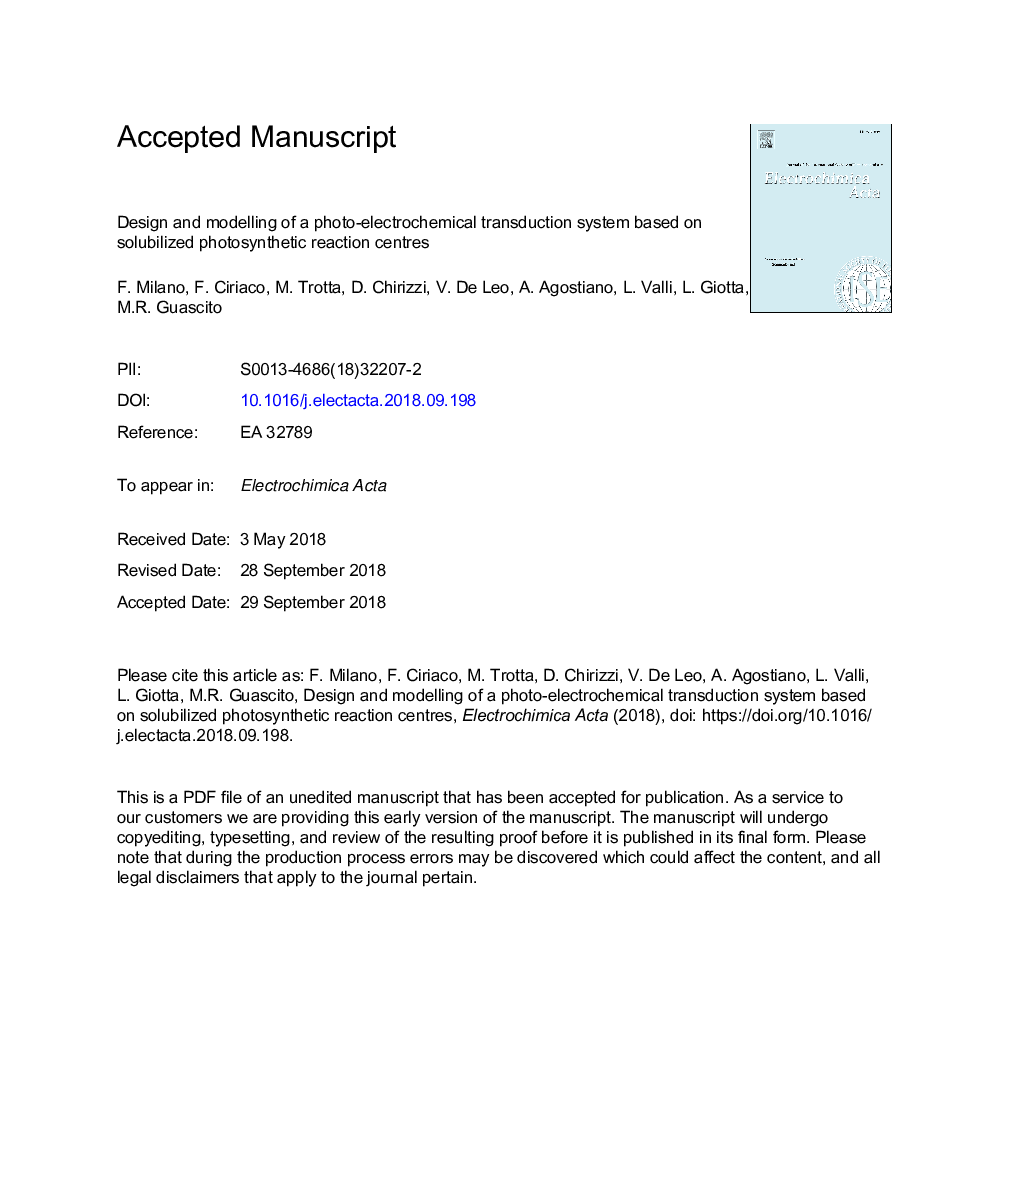 طراحی و مدل سازی یک سیستم انتقال الکترونیک الکتروشیمیایی بر اساس مراحل واکنش فتوسنتز حلالیتی